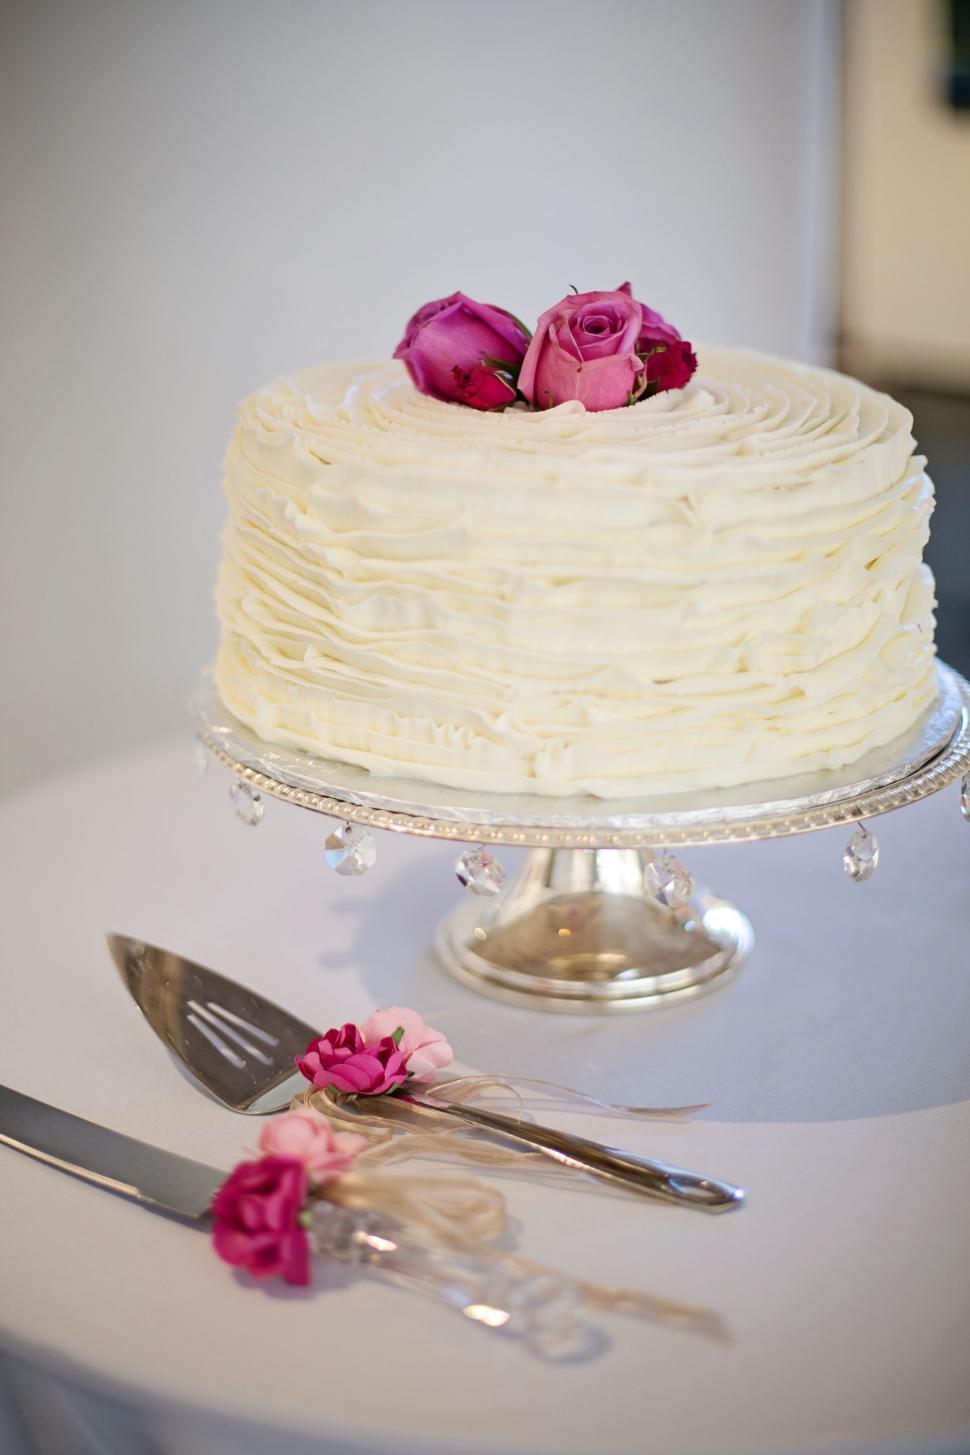 Free Image of Wedding Cake 